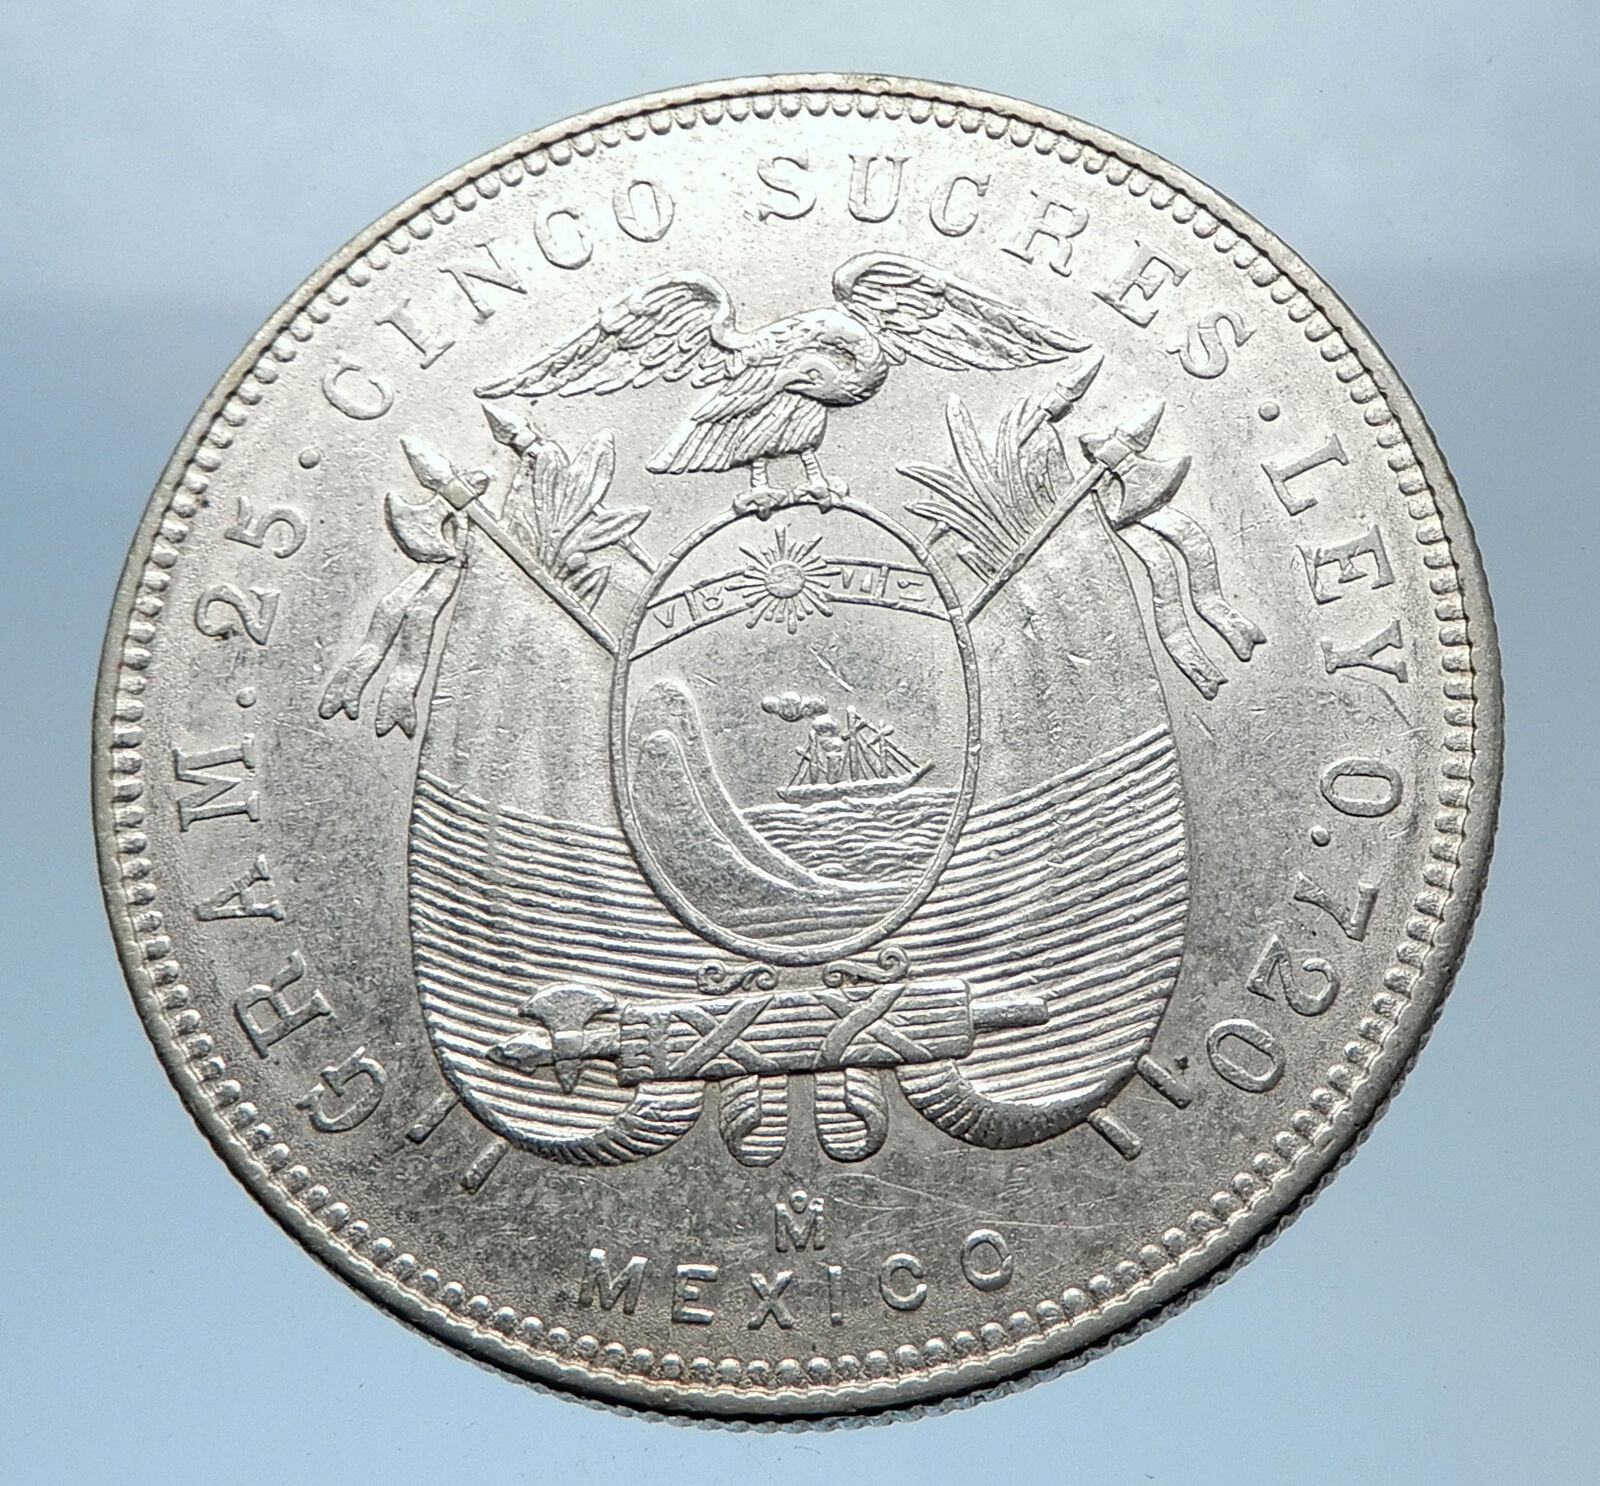 1944 EQUADOR Antonio Jose de Sucre y Alcala Antique Silver 5 Sucres Coin i72411